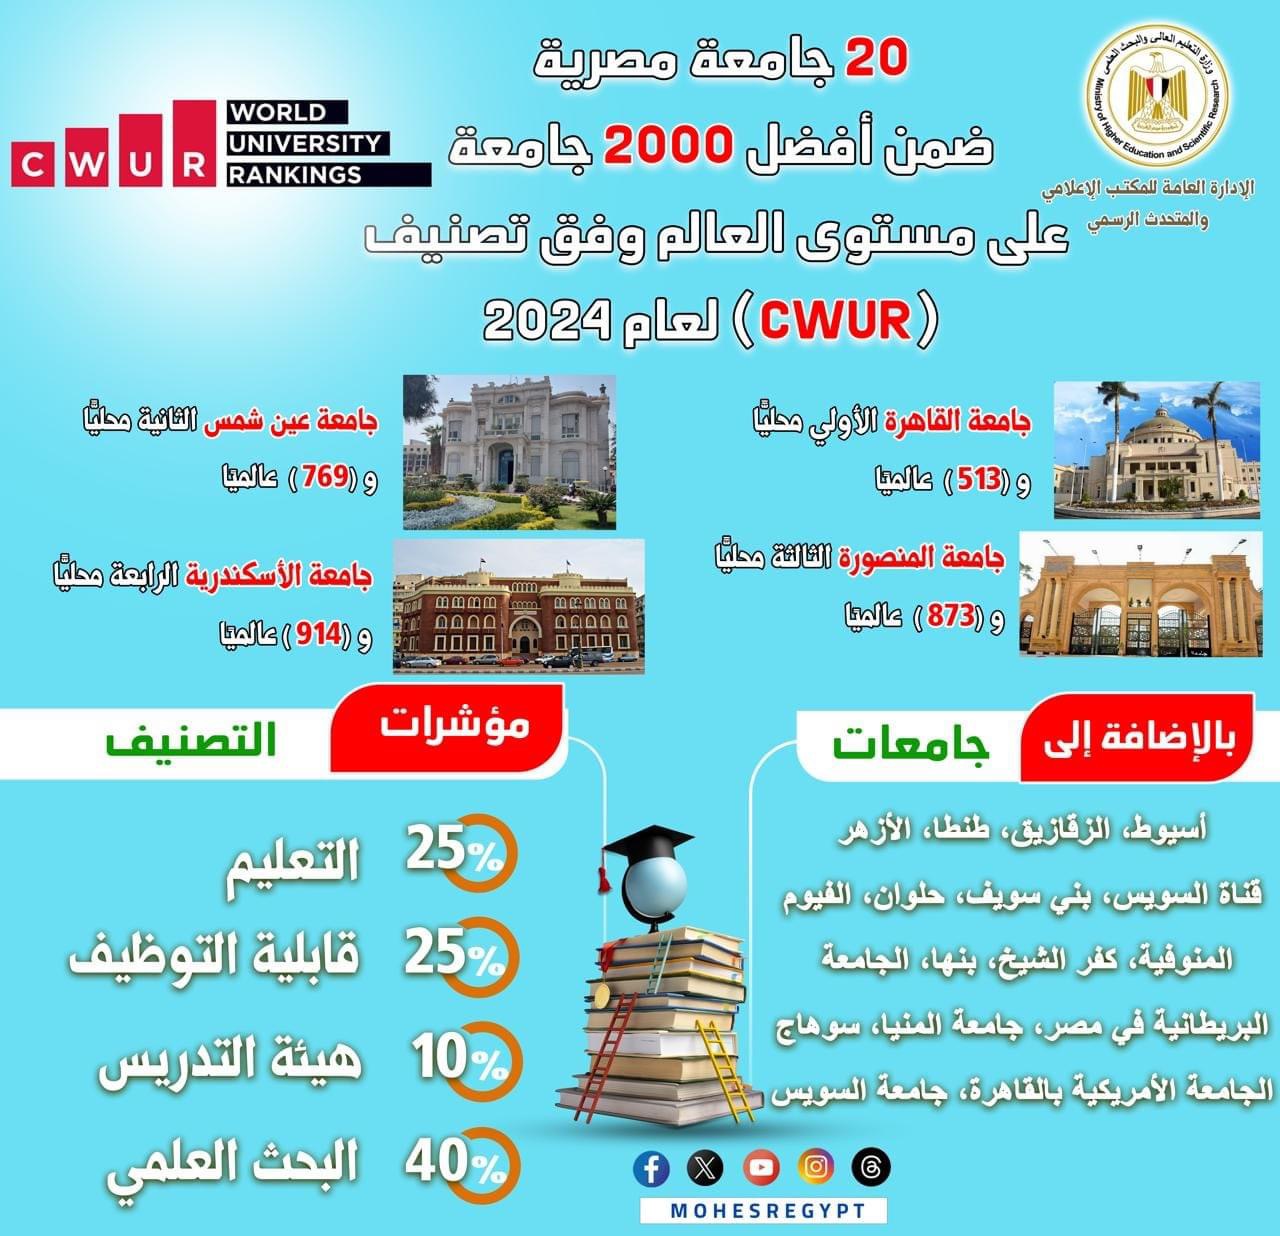 20 جامعة مصرية ضمن أفضل 2000 جامعة على مستوى العالم وفق تصنيف (CWUR) لعام 2024